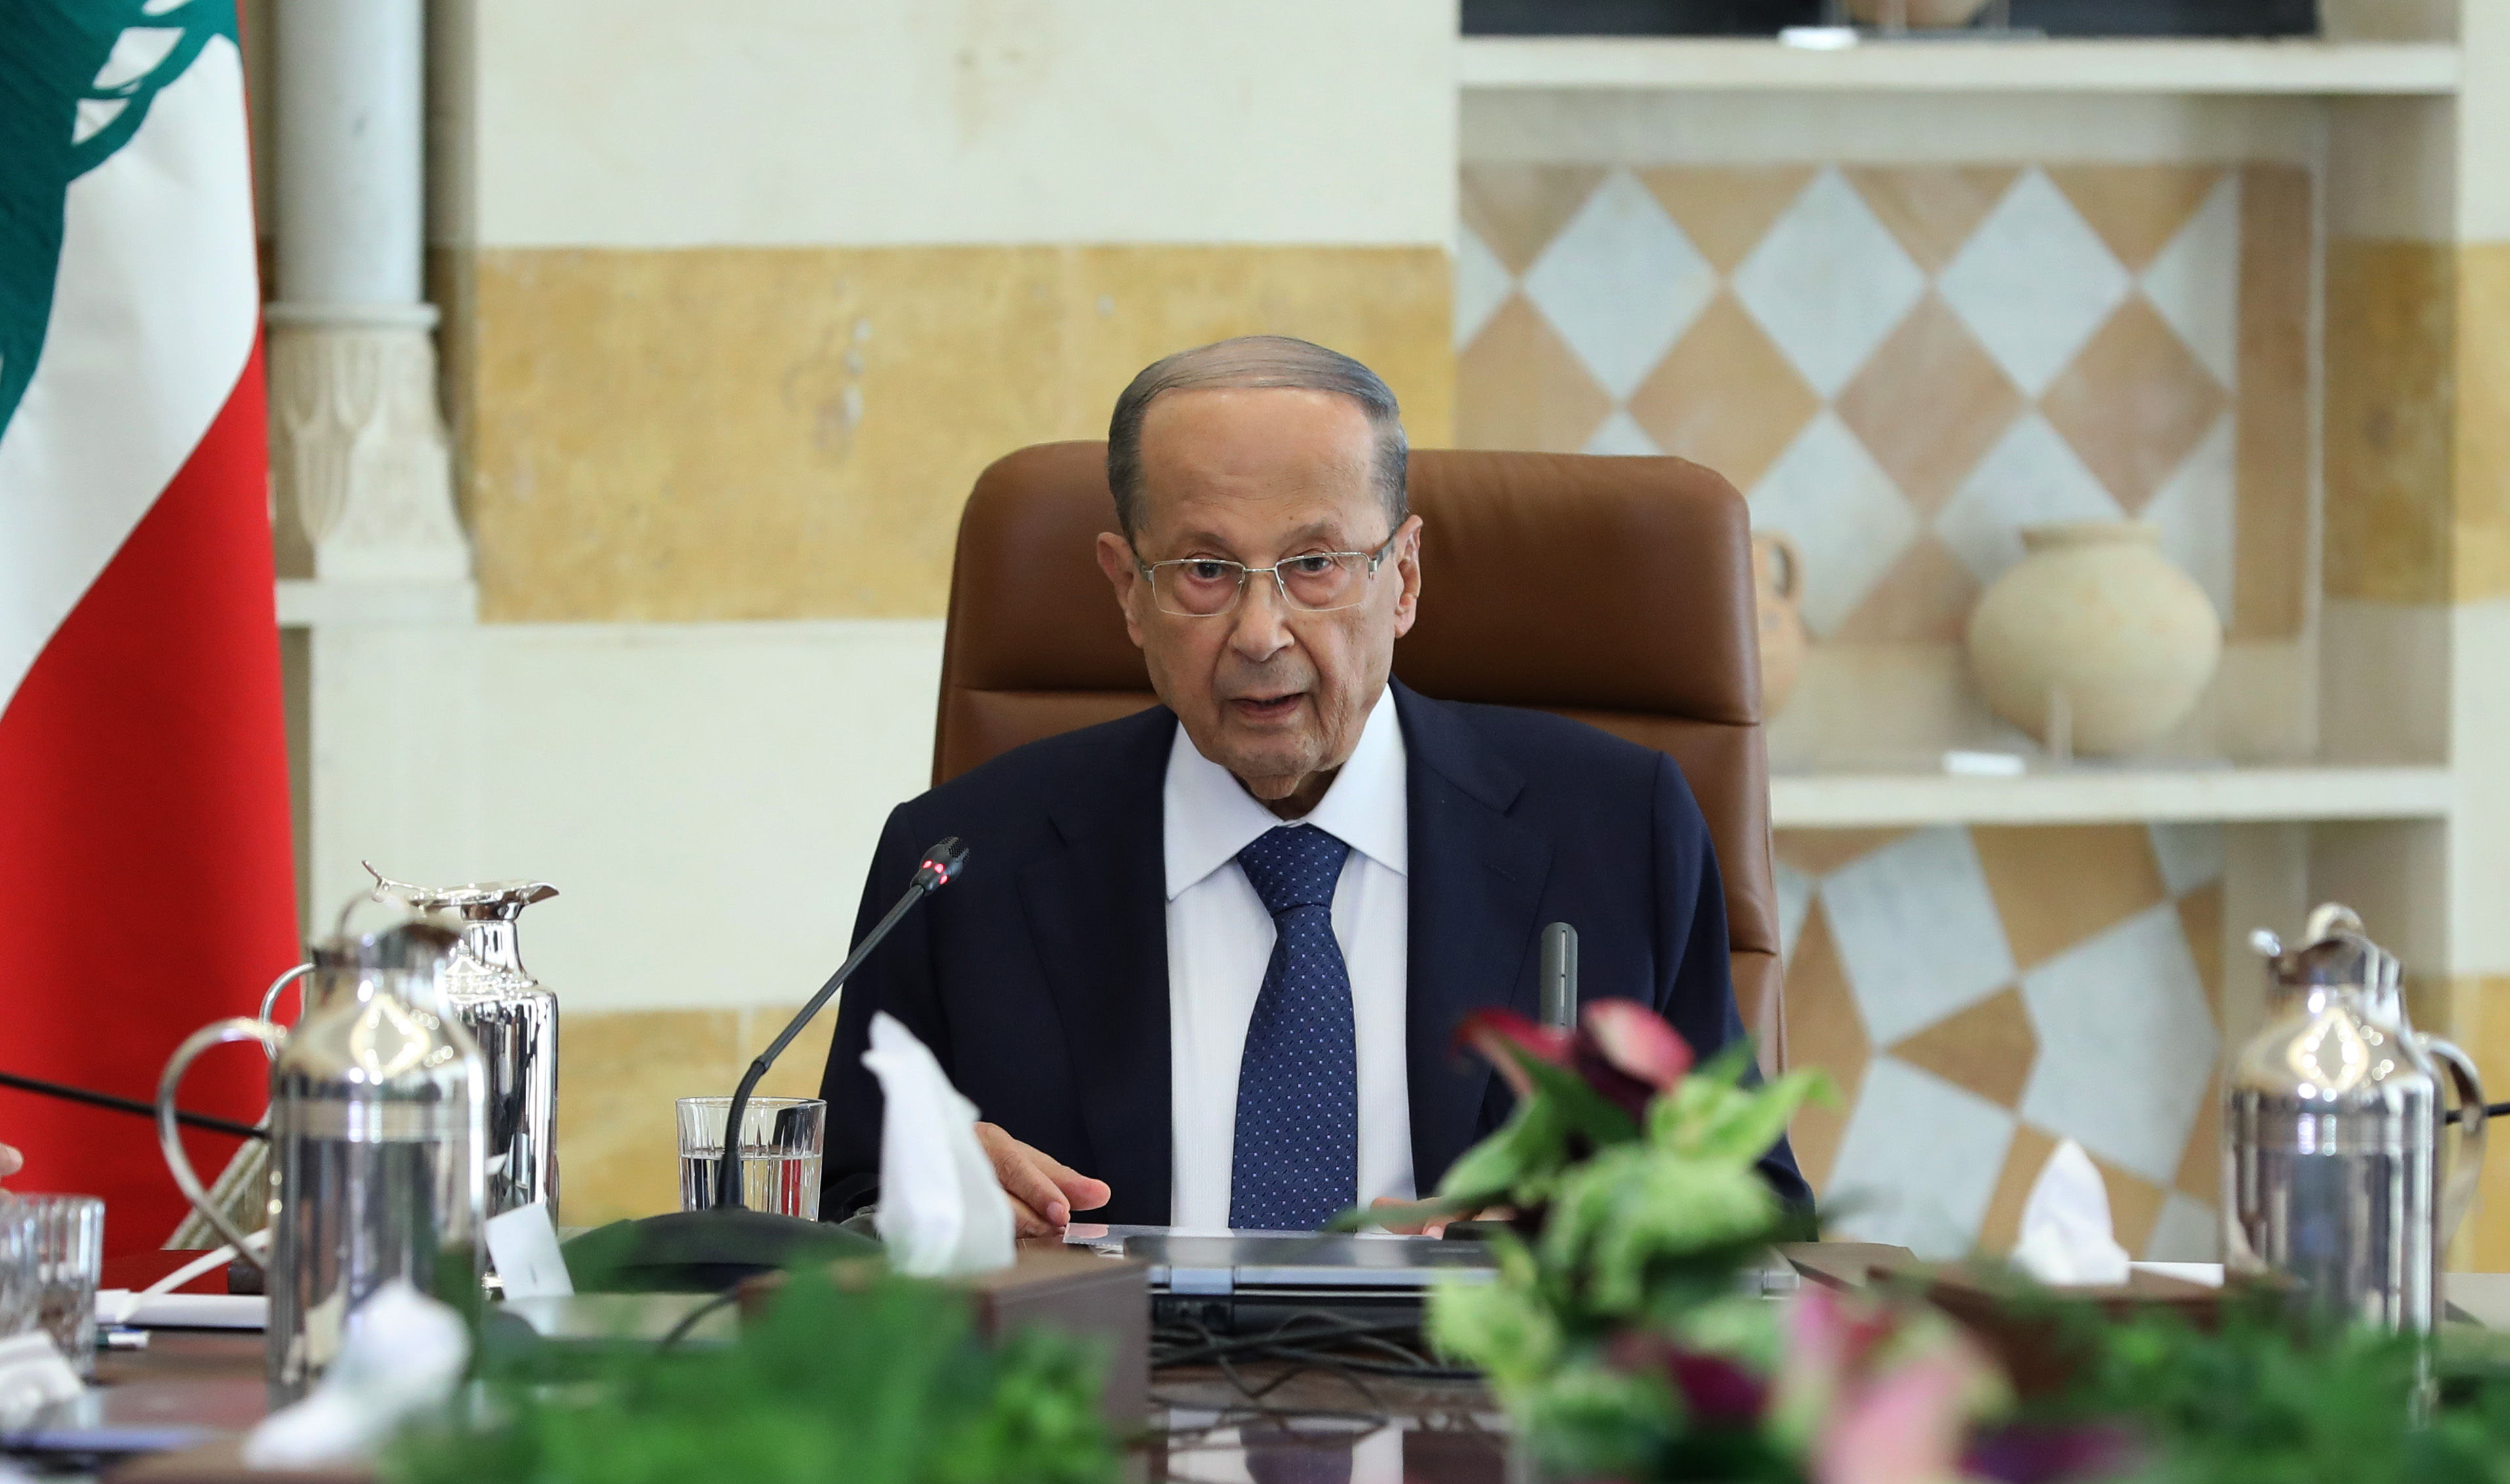 Le chef de l'état lors du Sommet Economique de Baabda. Crédit Photo: Dalati & Nohra